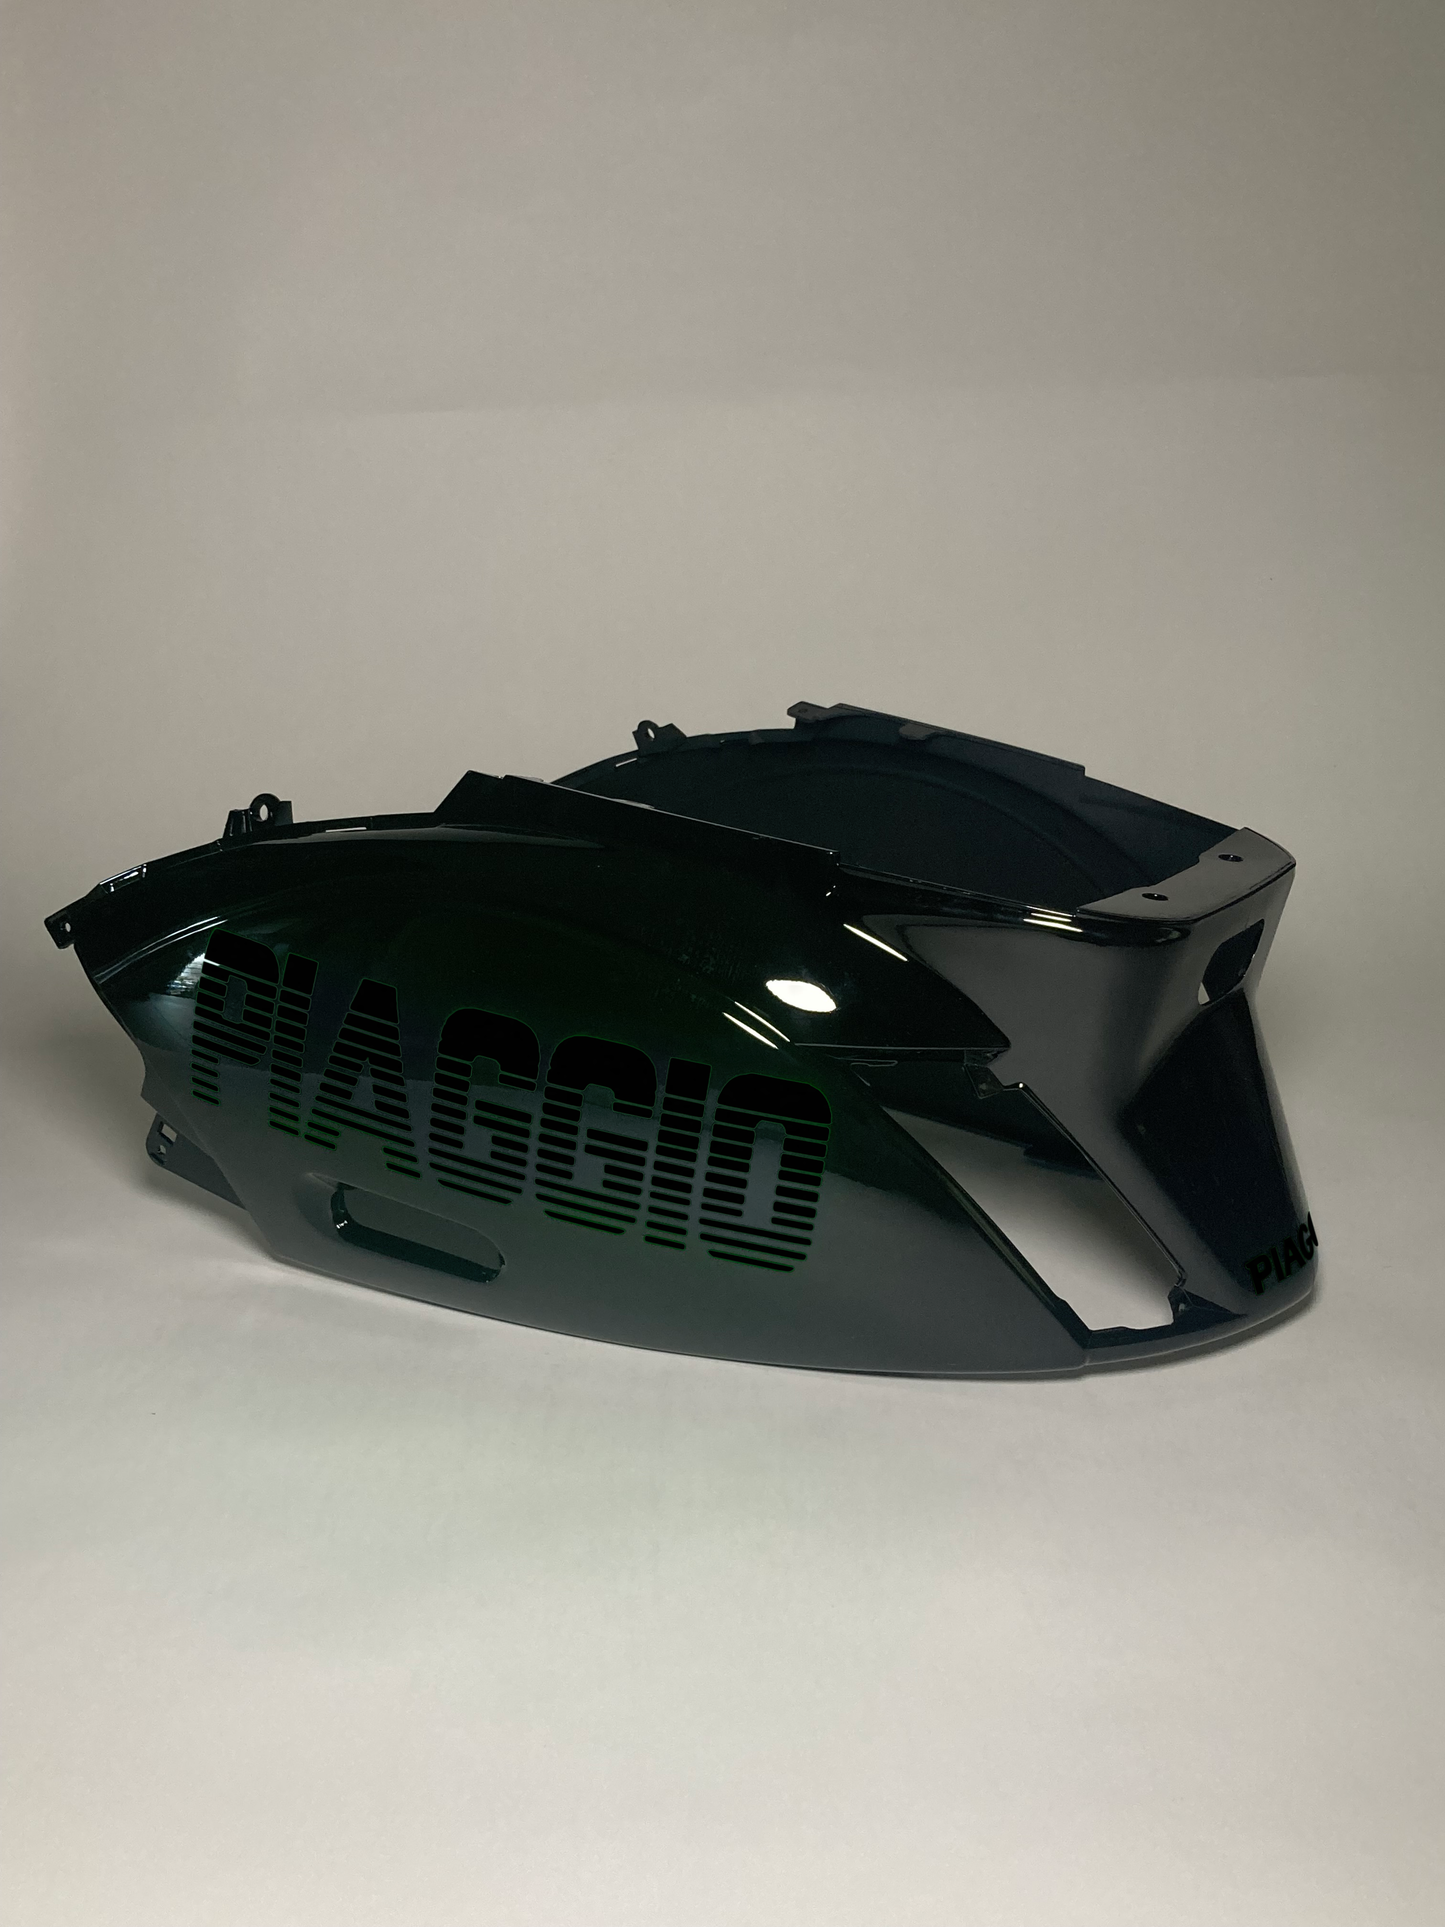 Reißverschluss Piaggio | Reflektierendes Schwarz